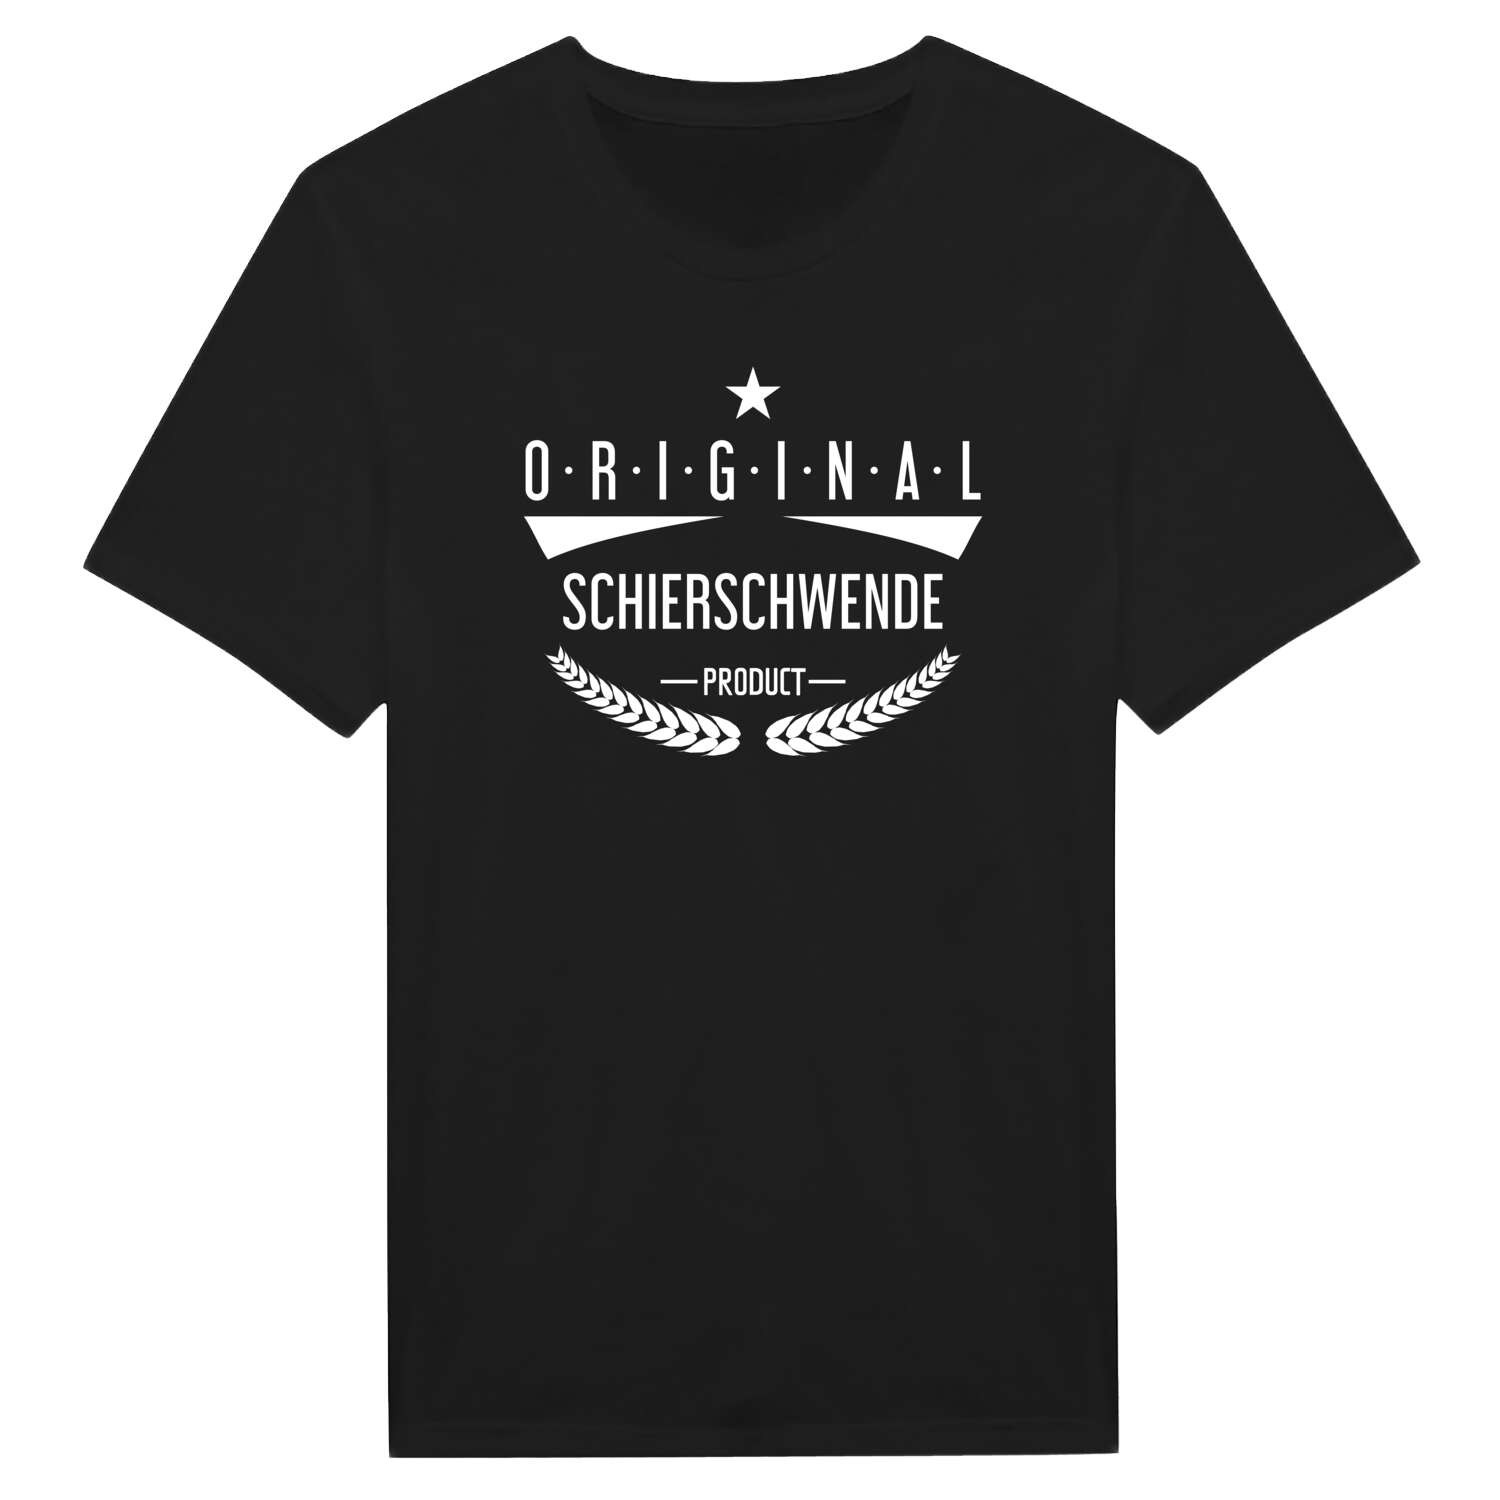 Schierschwende T-Shirt »Original Product«